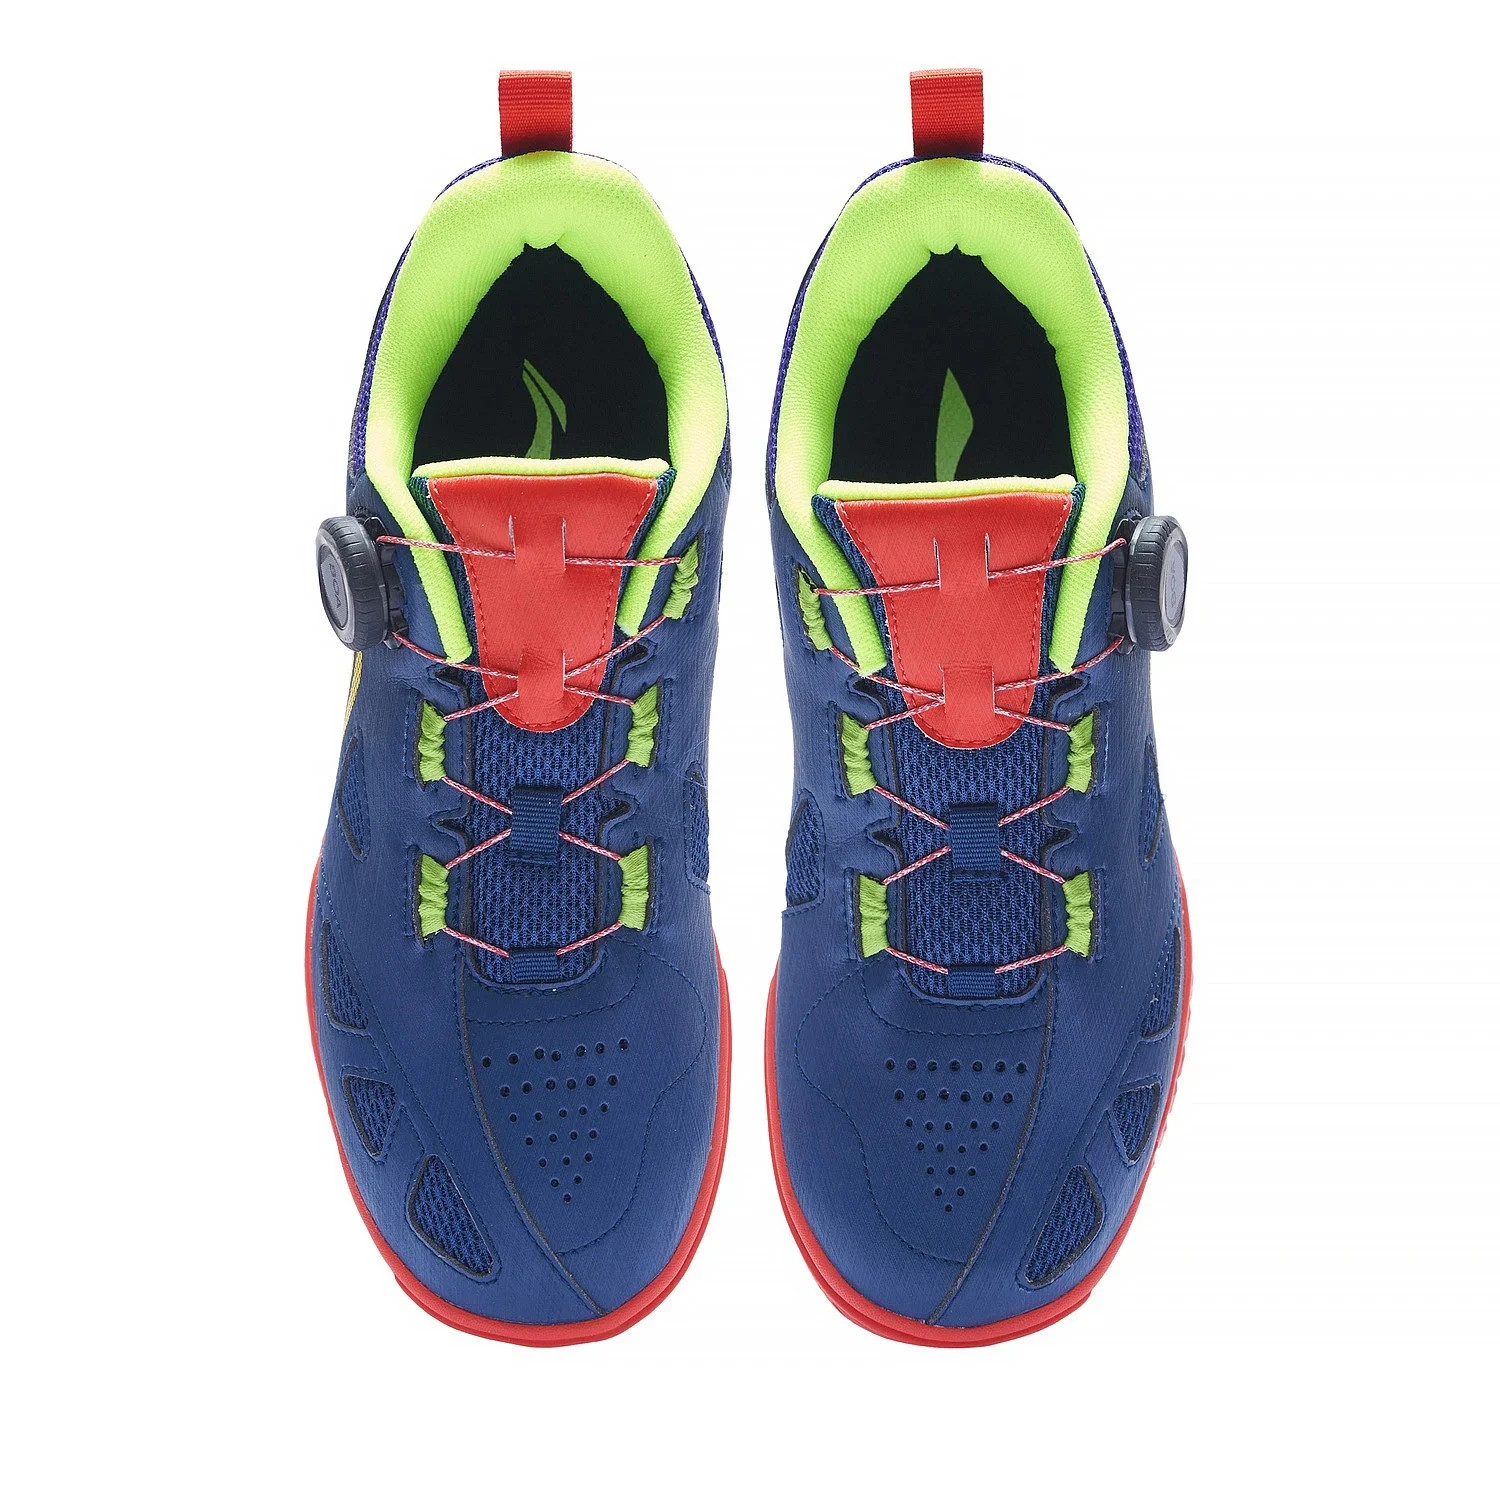 Giày bóng bàn chuyên nghiệp Lining MAGE ES APTT001 chính hãng có 2 màu-tặng tất thể thao bendu